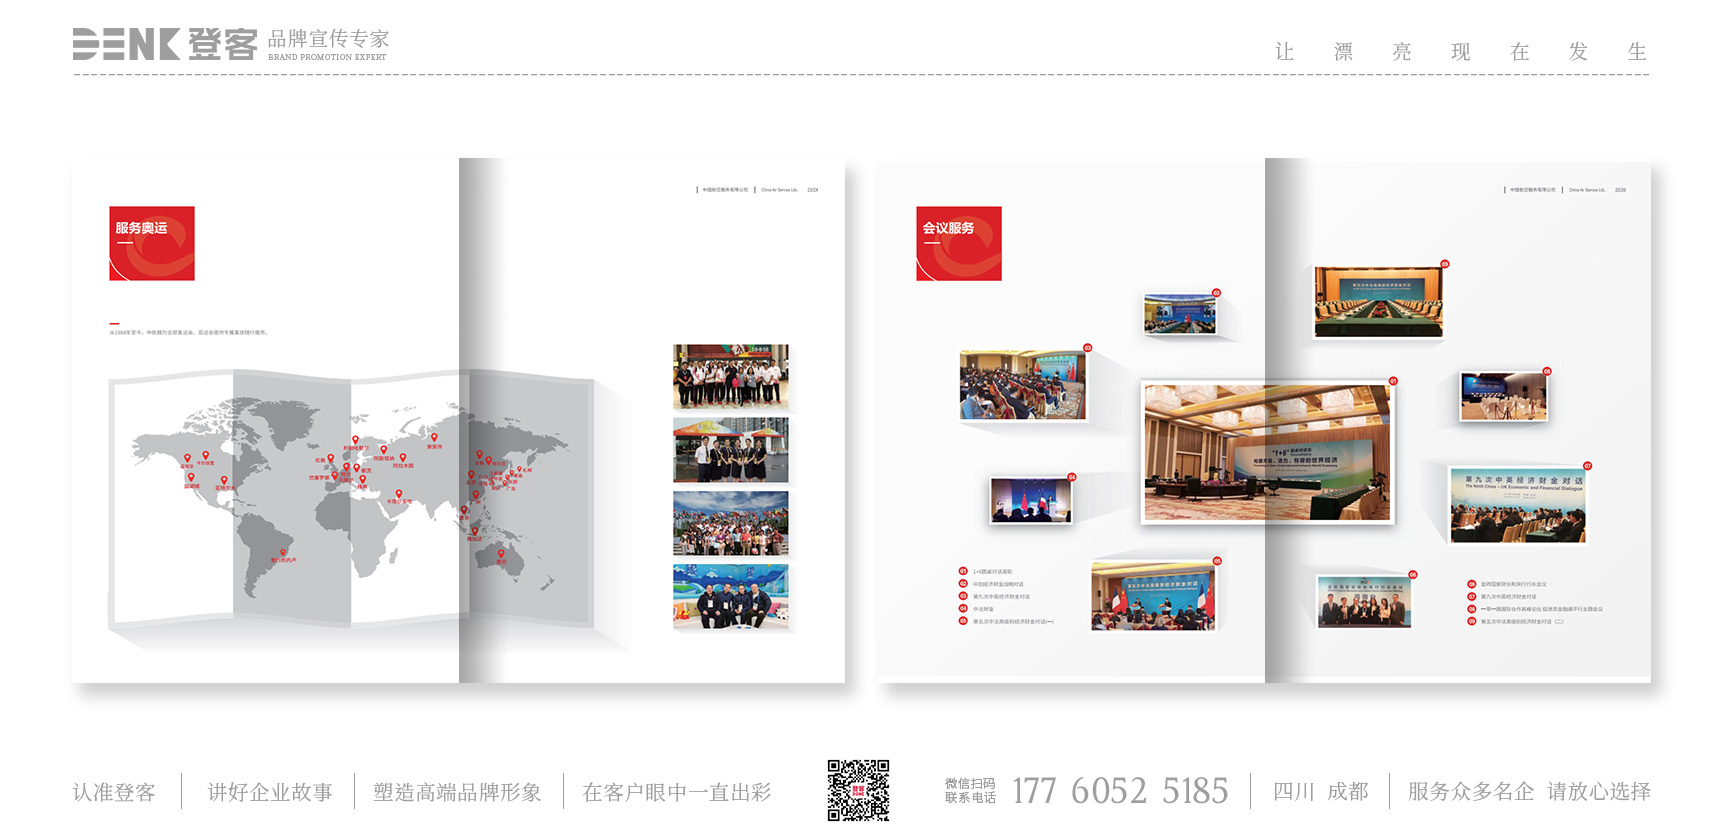 中国航空服务企业宣传册设计、服务手册设计，服务画册设计，企业服务宣传册设计，公司宣传册设计，企业手册设计